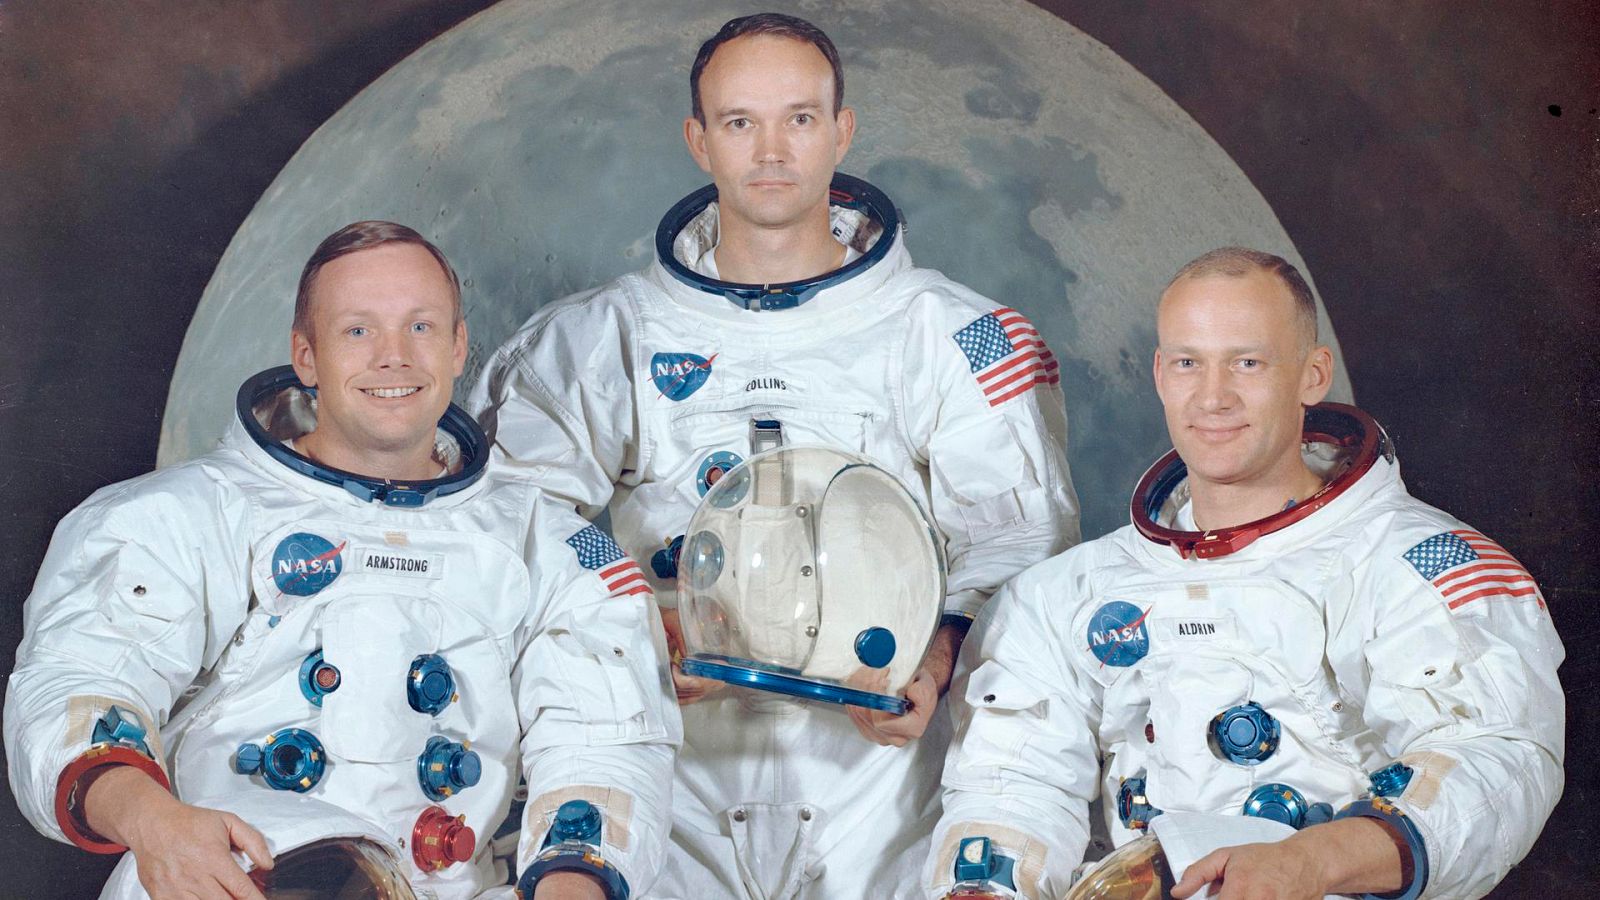 Aniversario llegada a la Luna: Quiénes eran Armstrong, Aldrin y Collins